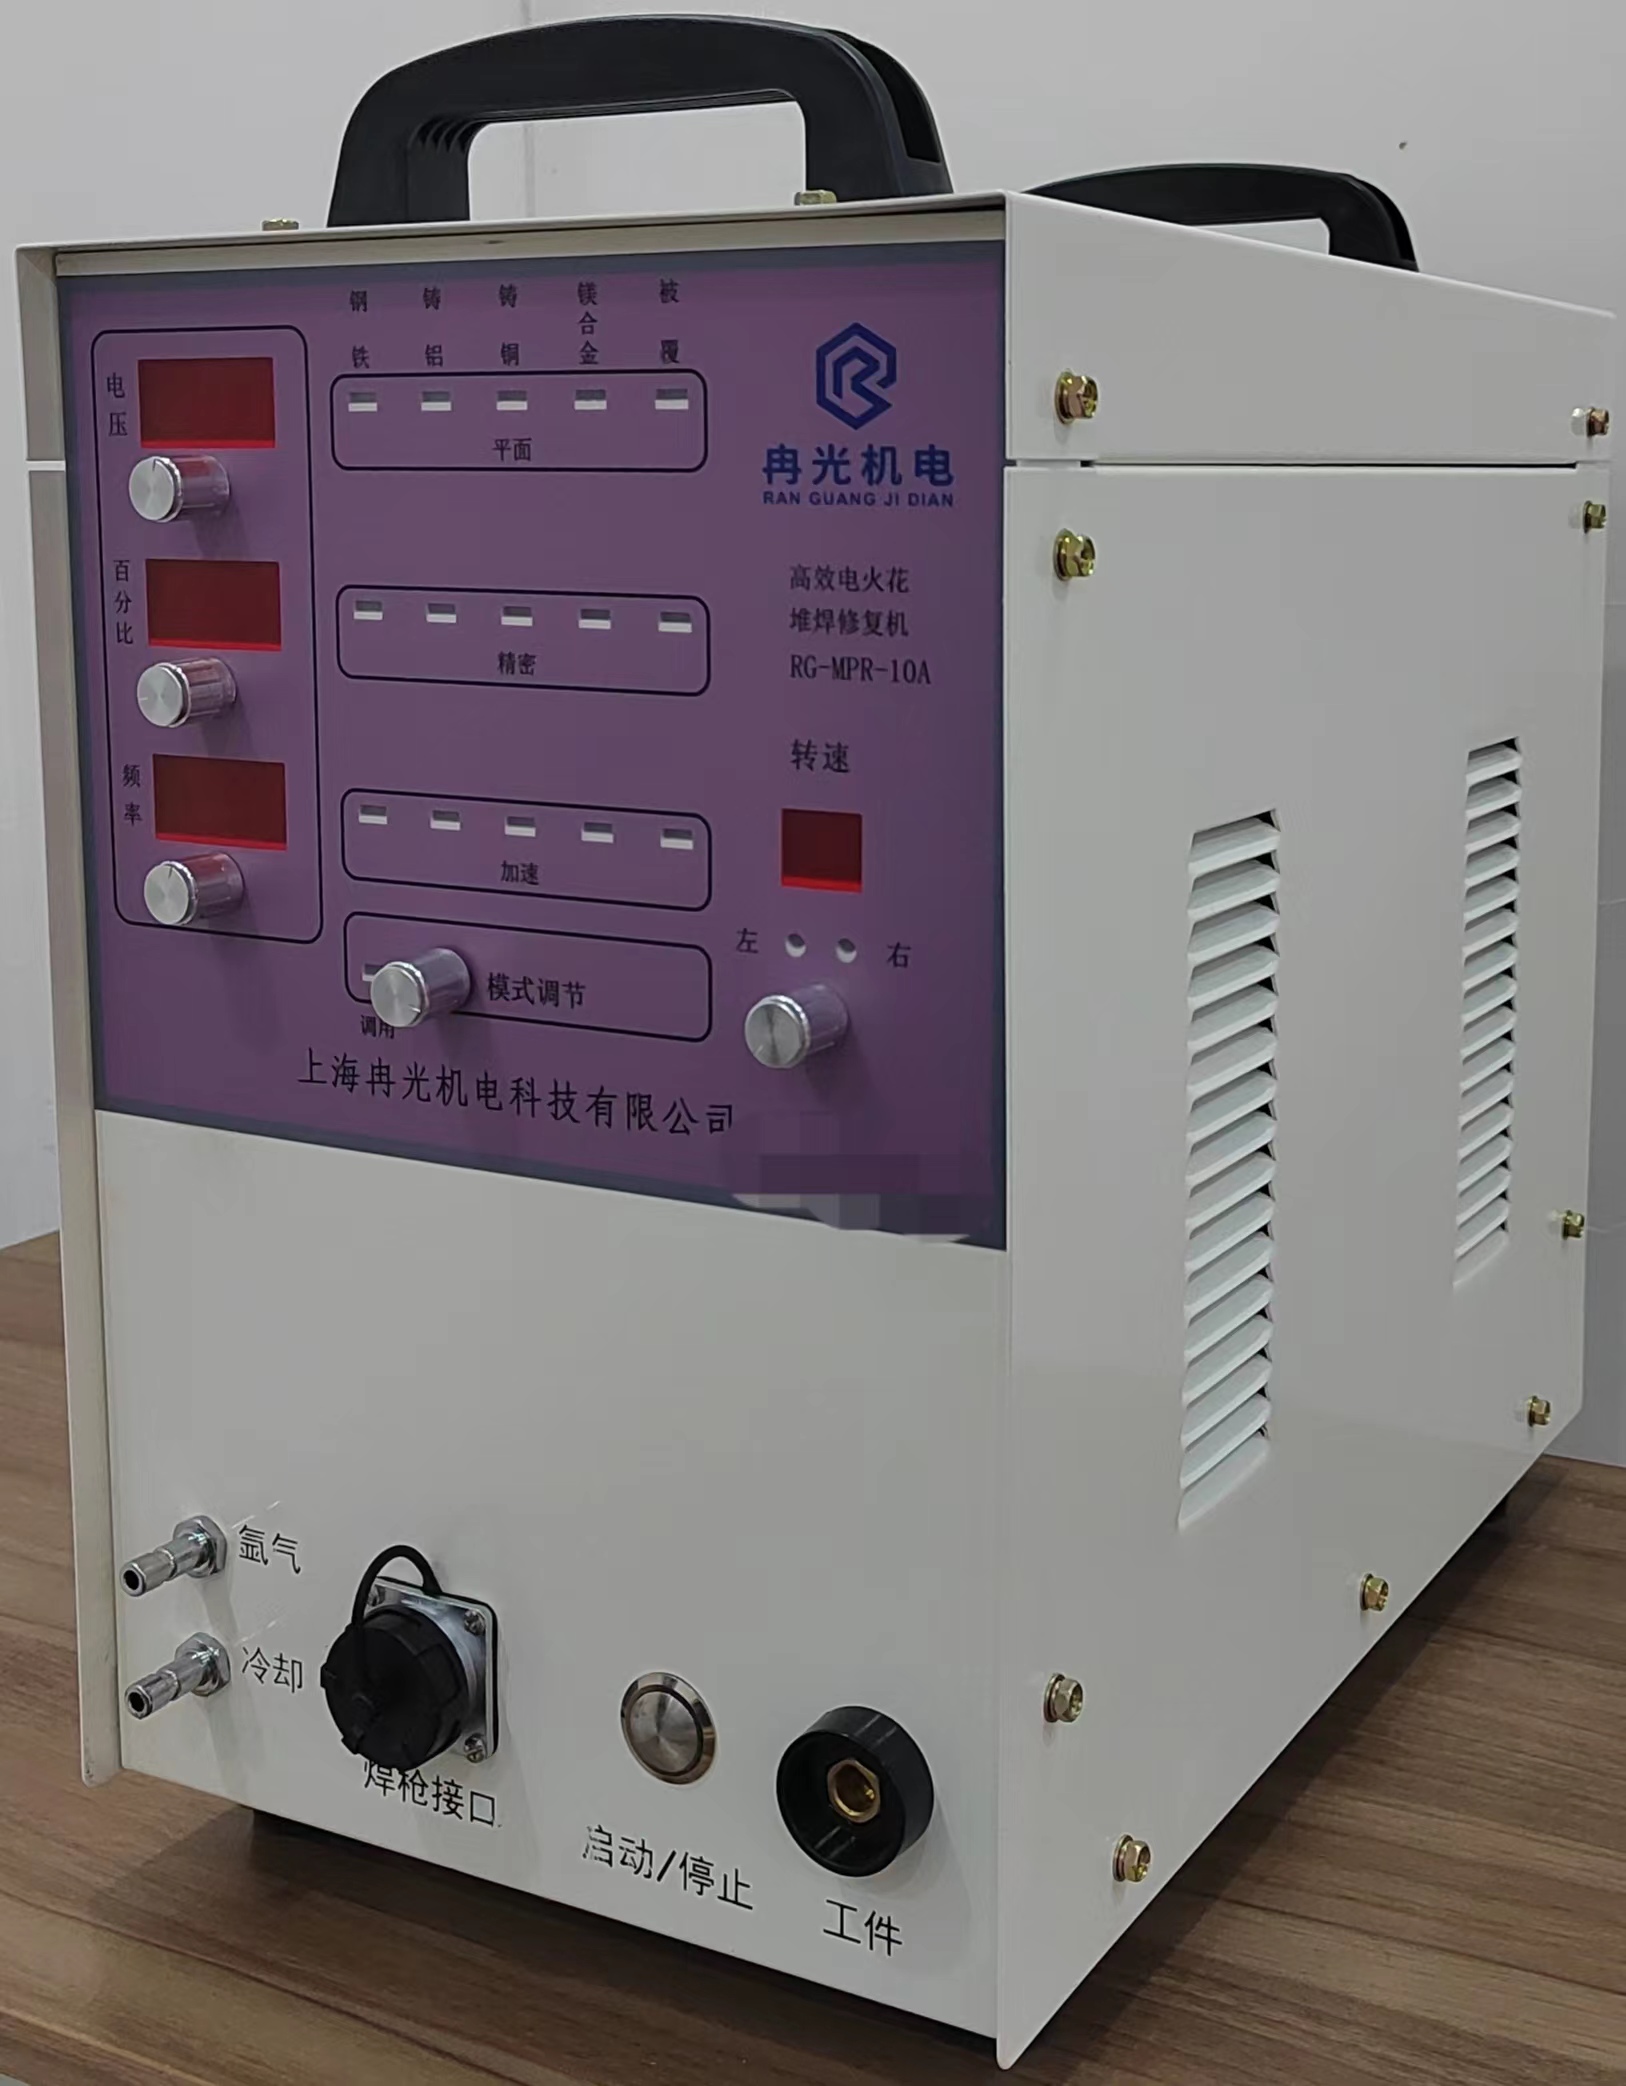 上海冉光机电焊机RG-HFP-1000